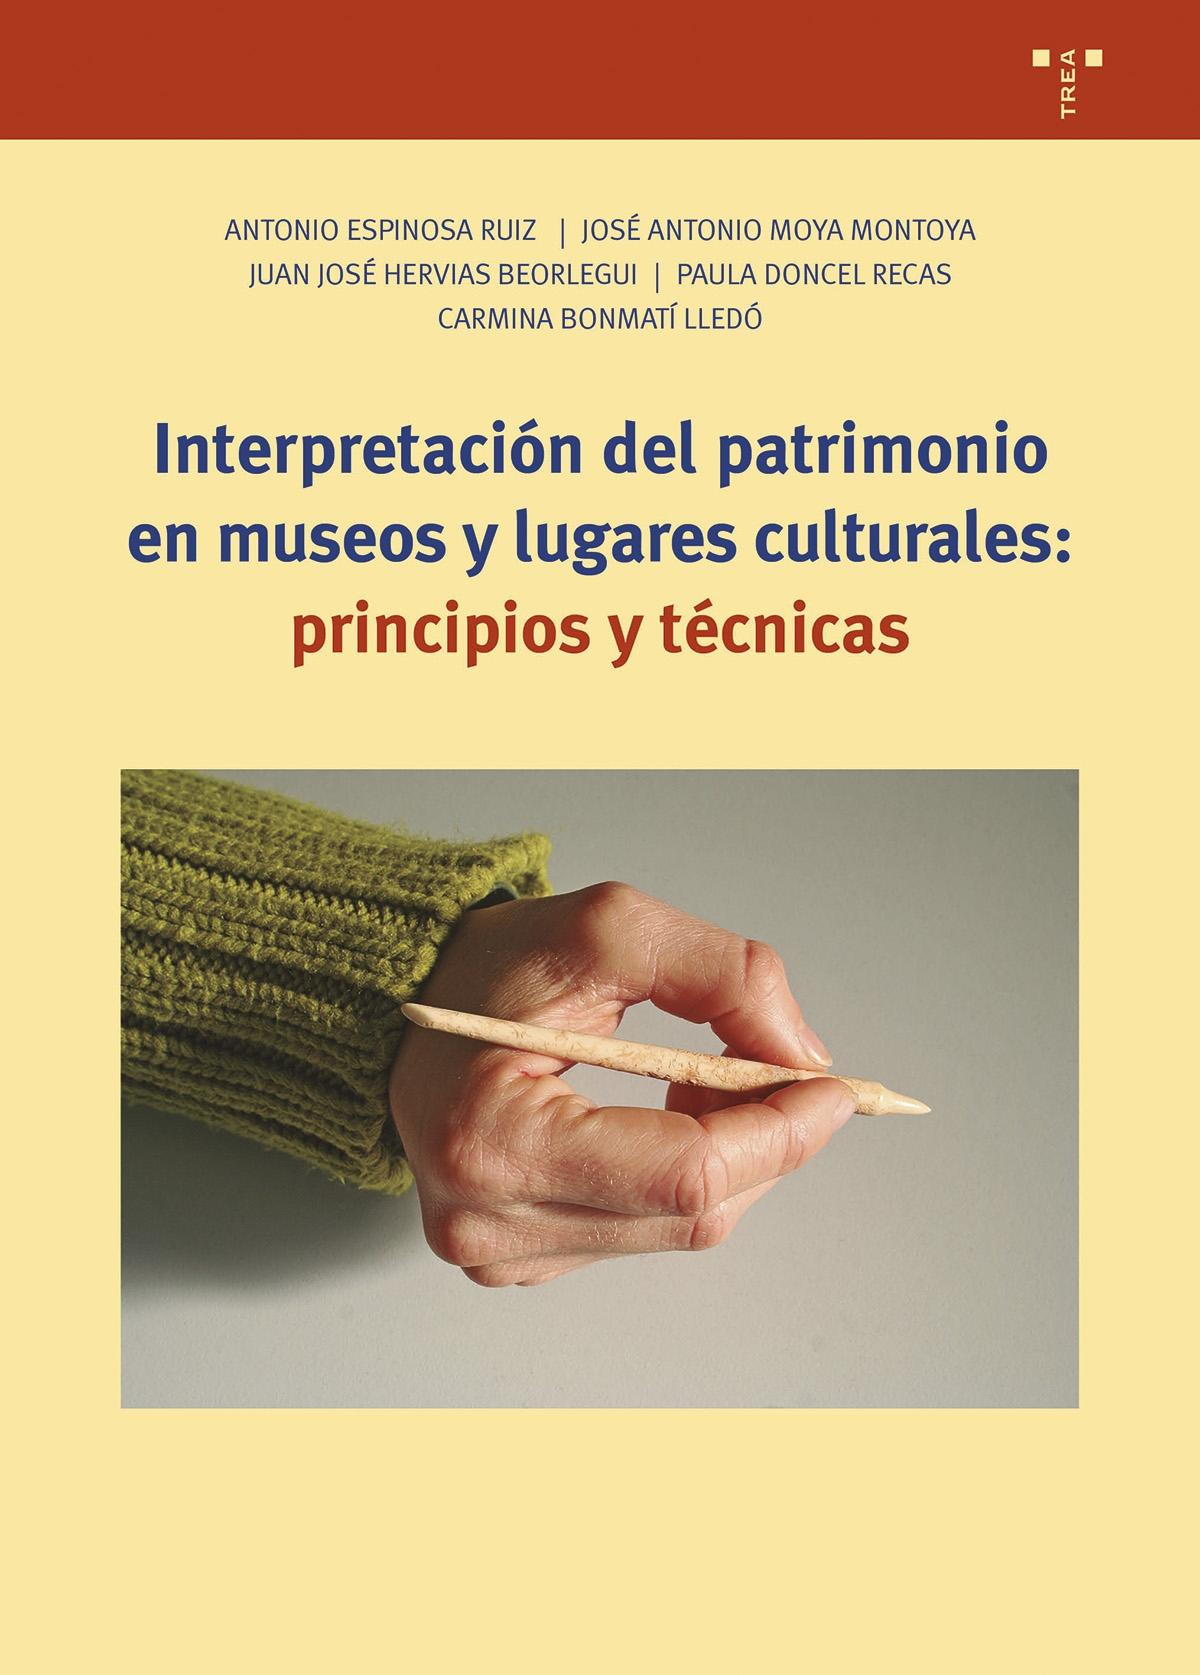 INTERPRETACION DEL PATRIMONIO EN MUSEOS Y LUGARES CULTURALES "PRINCIPIOS Y TECNICAS"